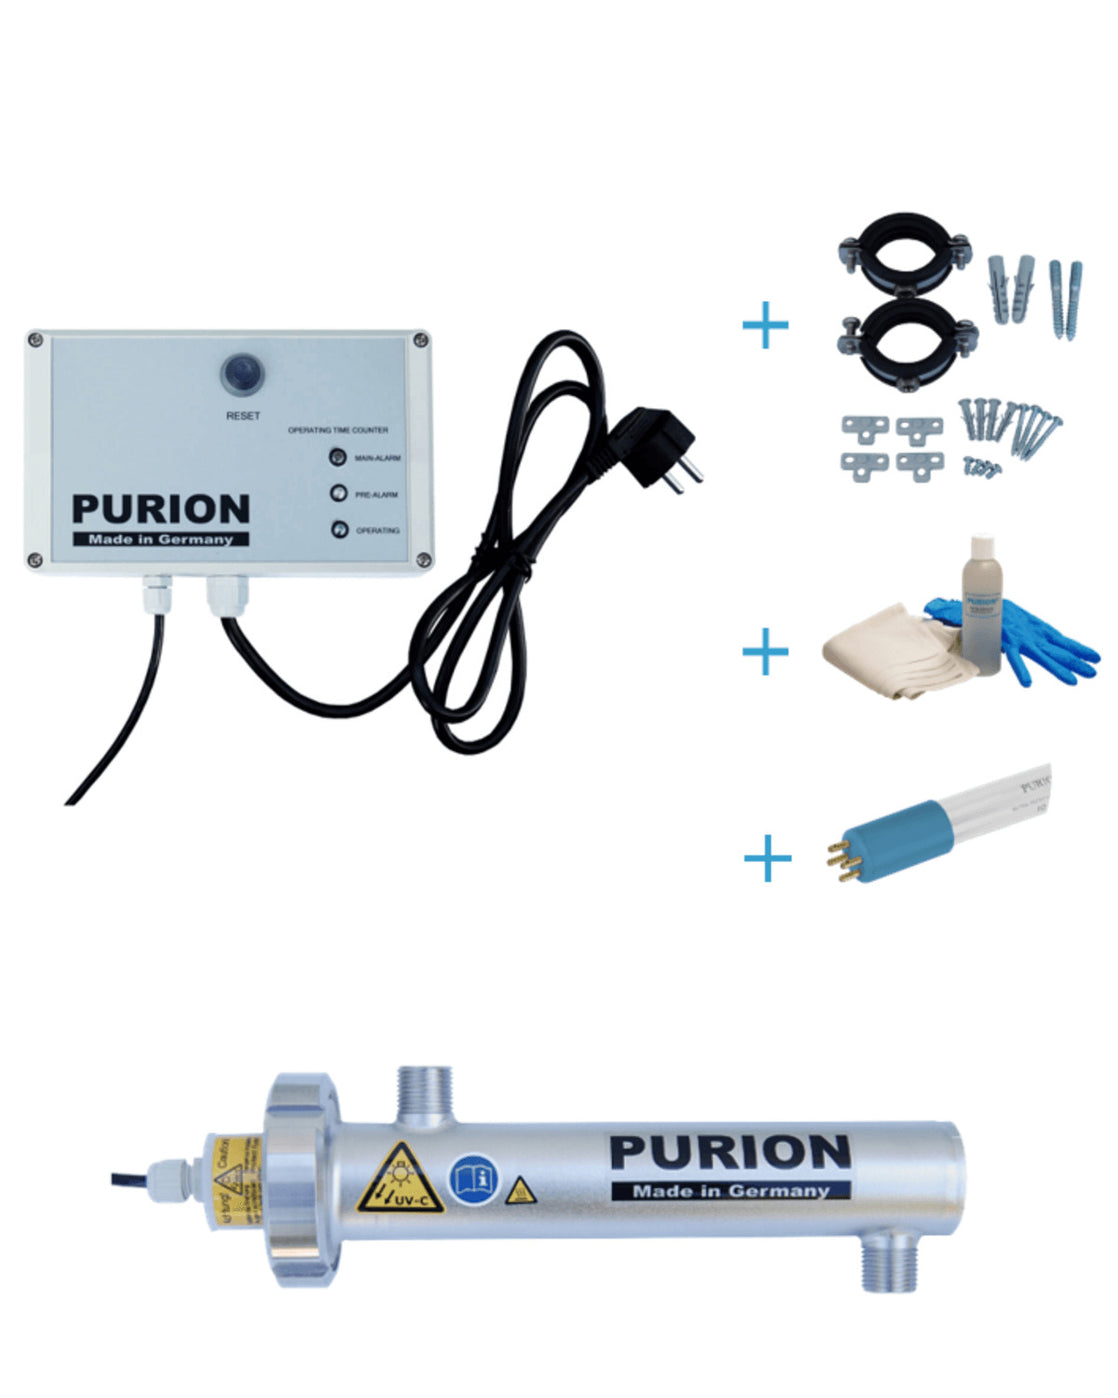 Das PURION 400 OTC Bundle ist eine UV-C-Lampe von PURION GmbH, die entkeimtes Trinkwasser liefert und ohne dass eine externe Stromquelle erforderlich ist. Es